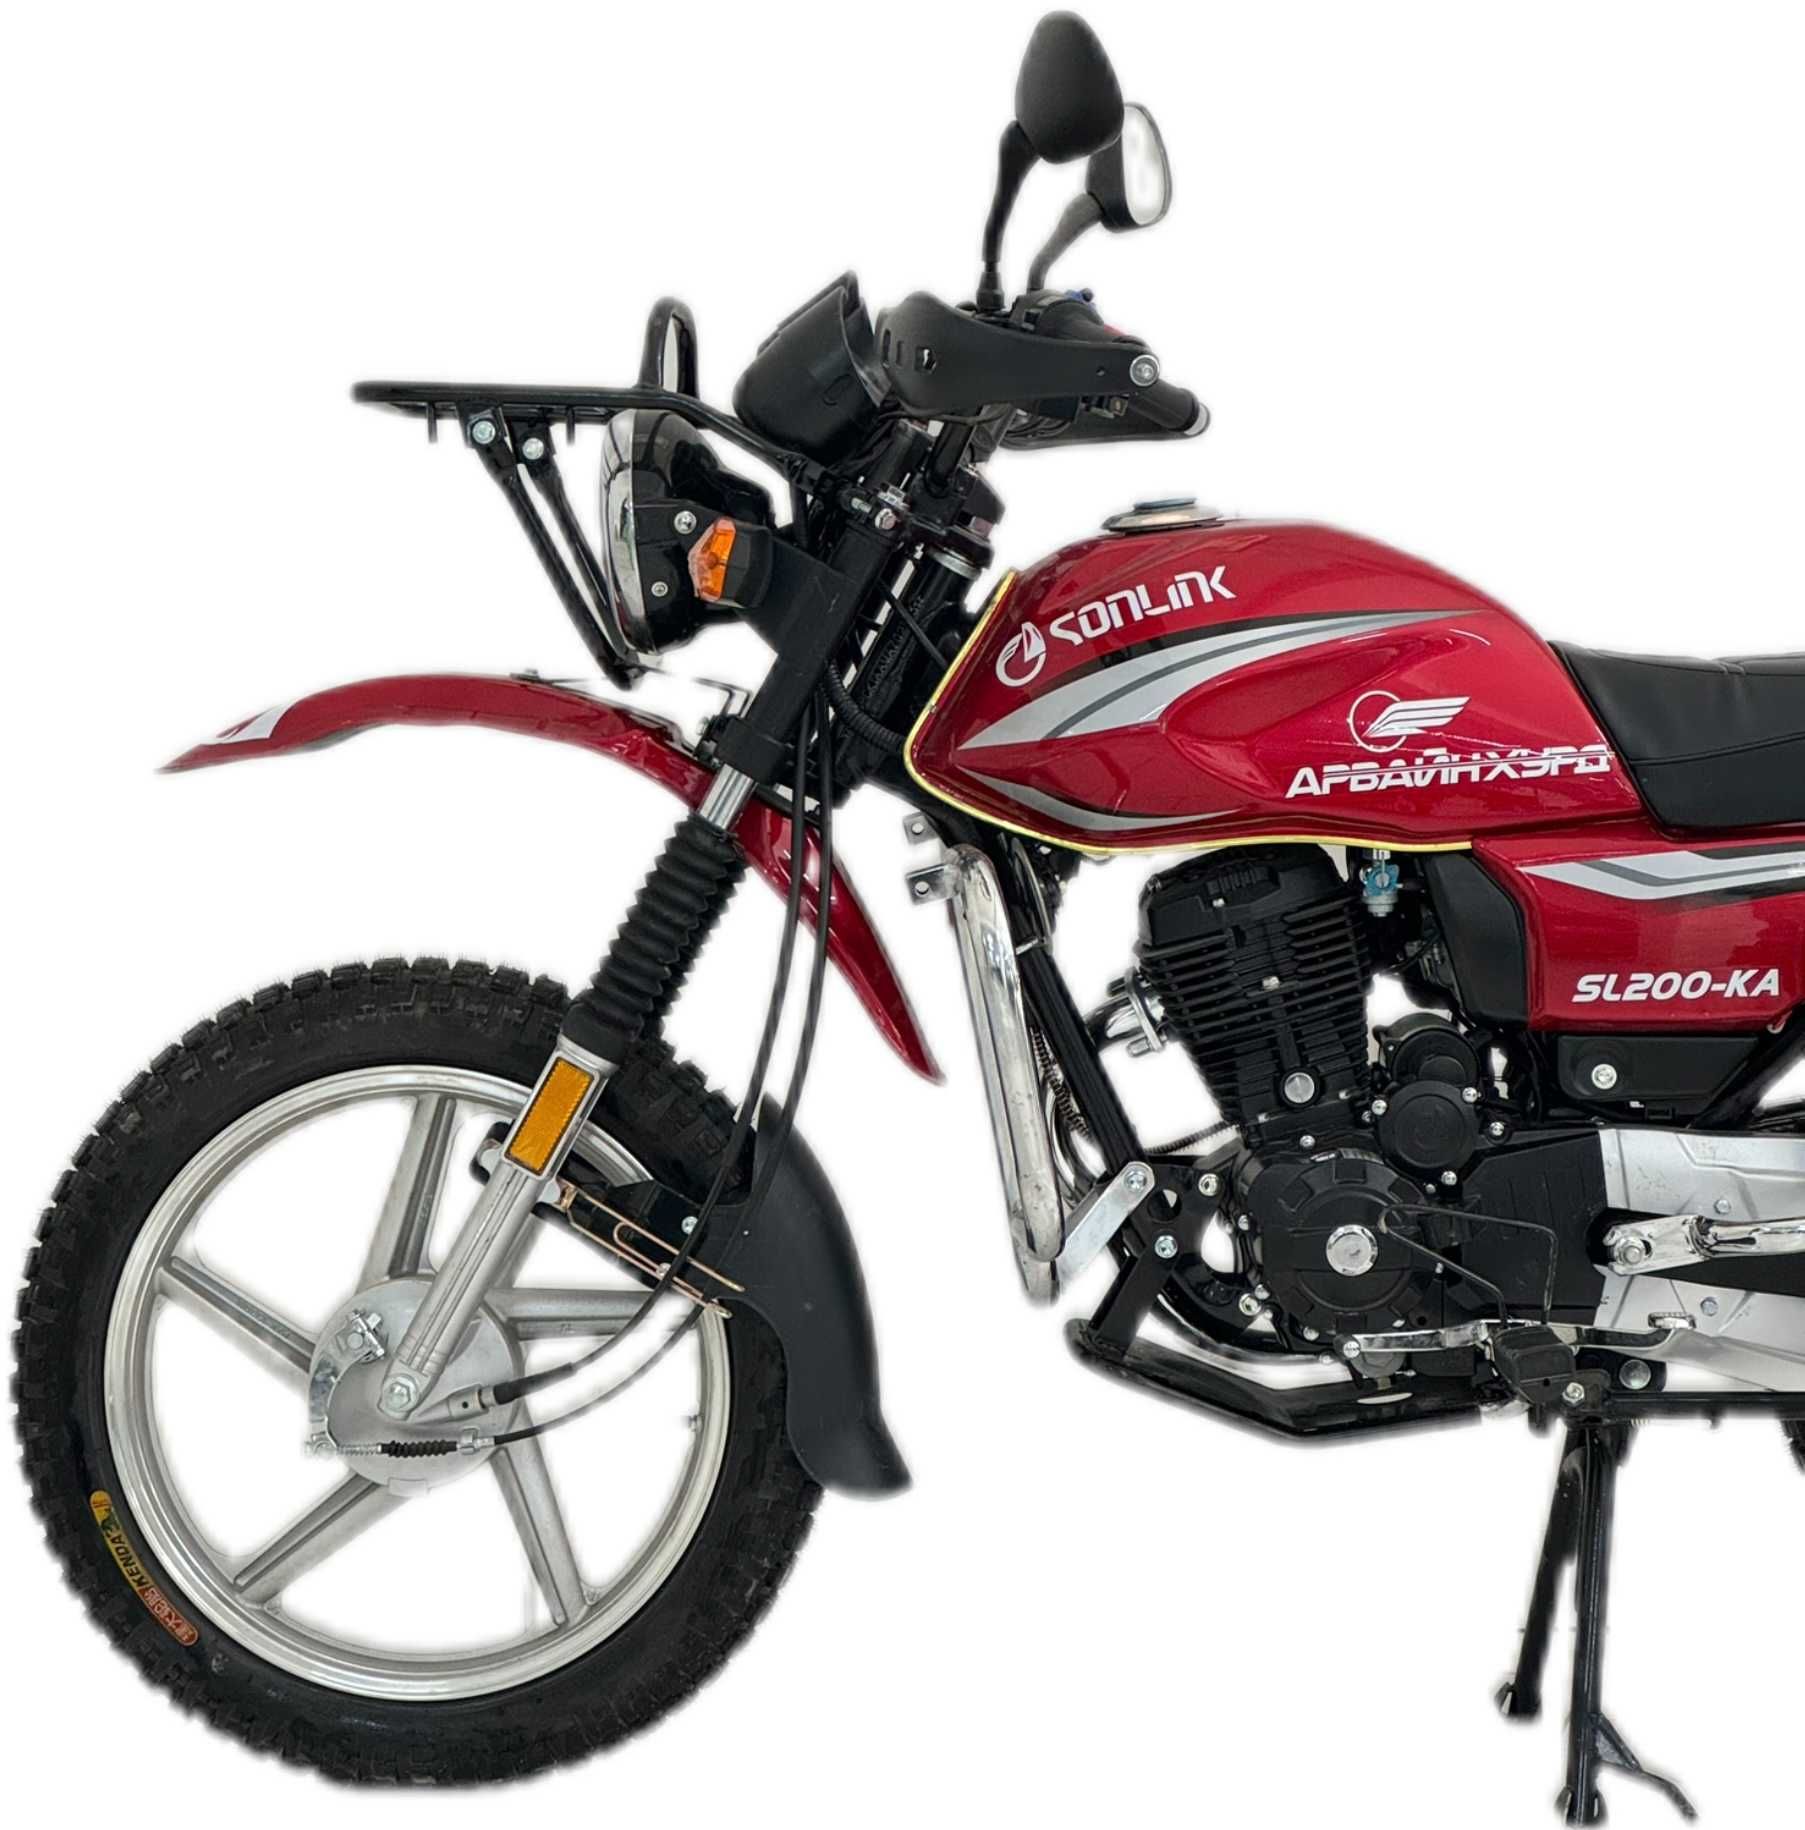 Original Sonlink Мотоцикл 200СС; Сонлинк 200 кубовый